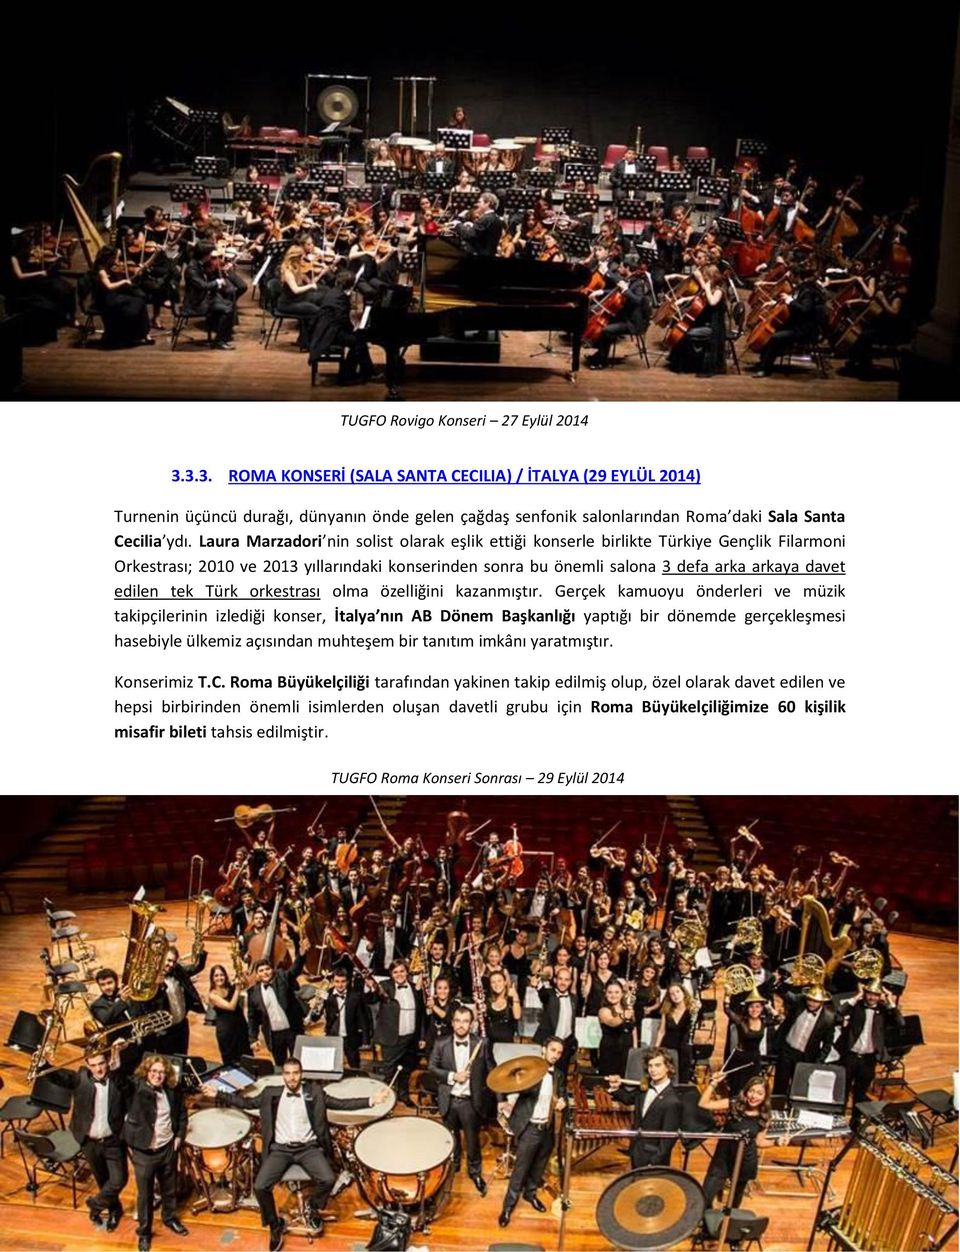 Laura Marzadori nin solist olarak eşlik ettiği konserle birlikte Türkiye Gençlik Filarmoni Orkestrası; 2010 ve 2013 yıllarındaki konserinden sonra bu önemli salona 3 defa arka arkaya davet edilen tek